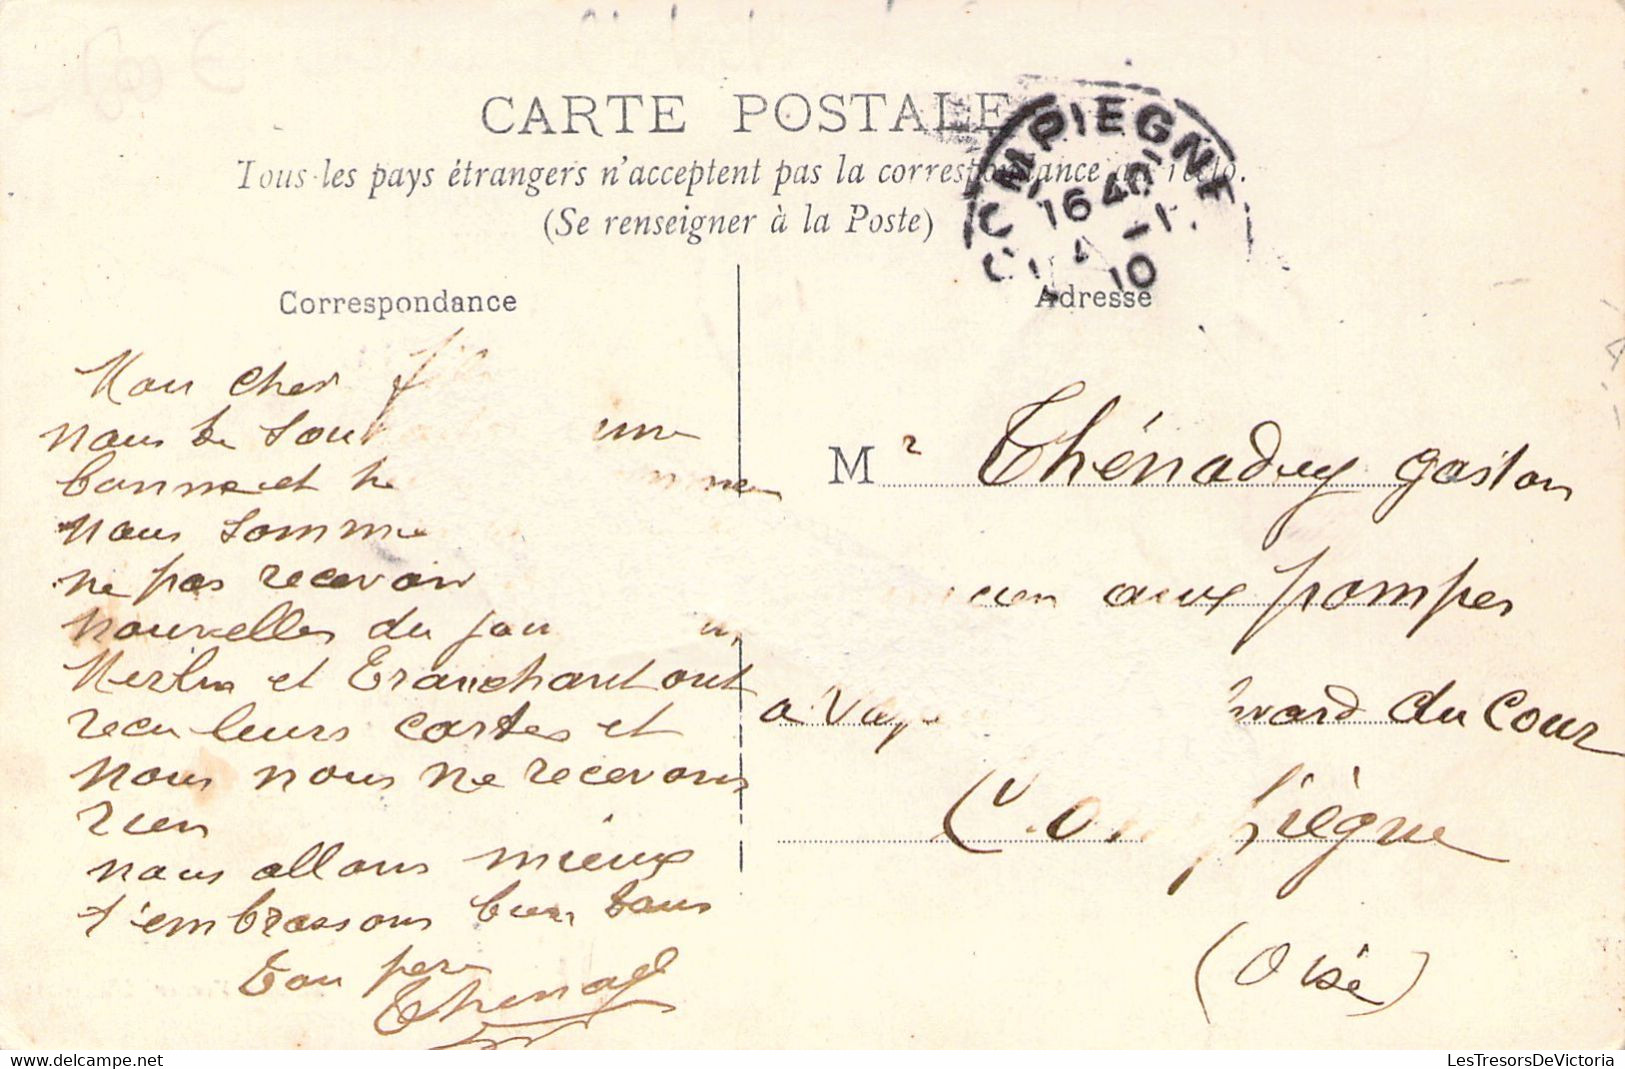 FRANCE - 60 - BORAN - Rue De Carouge - Colorisée - Carte Postale Ancienne - Boran-sur-Oise